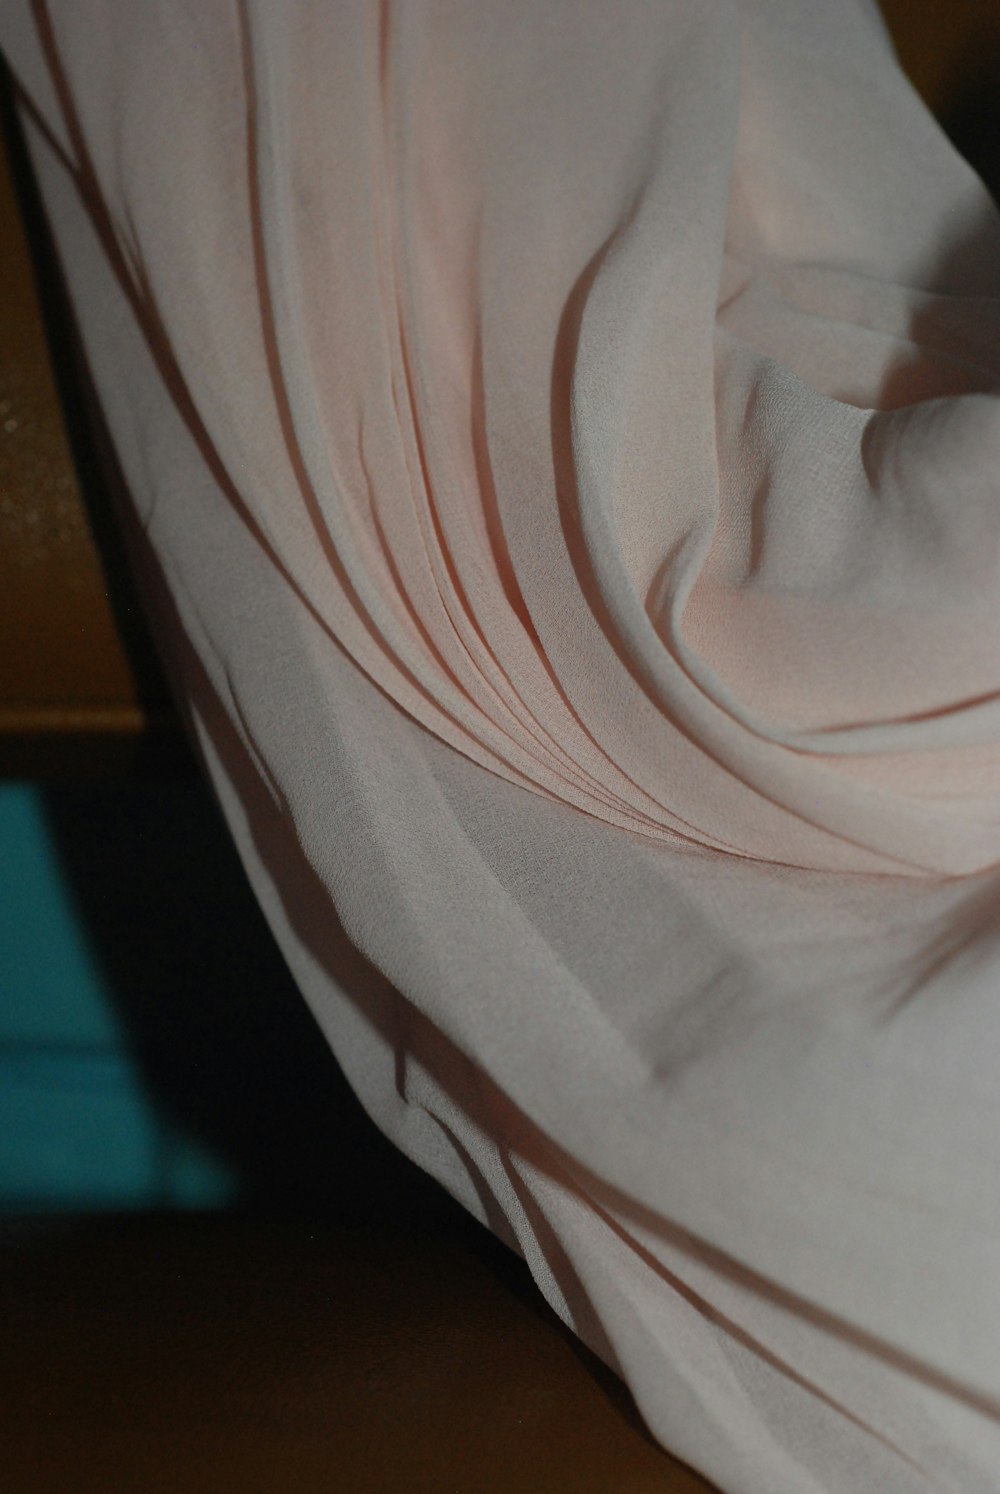 a close up of a white cloth